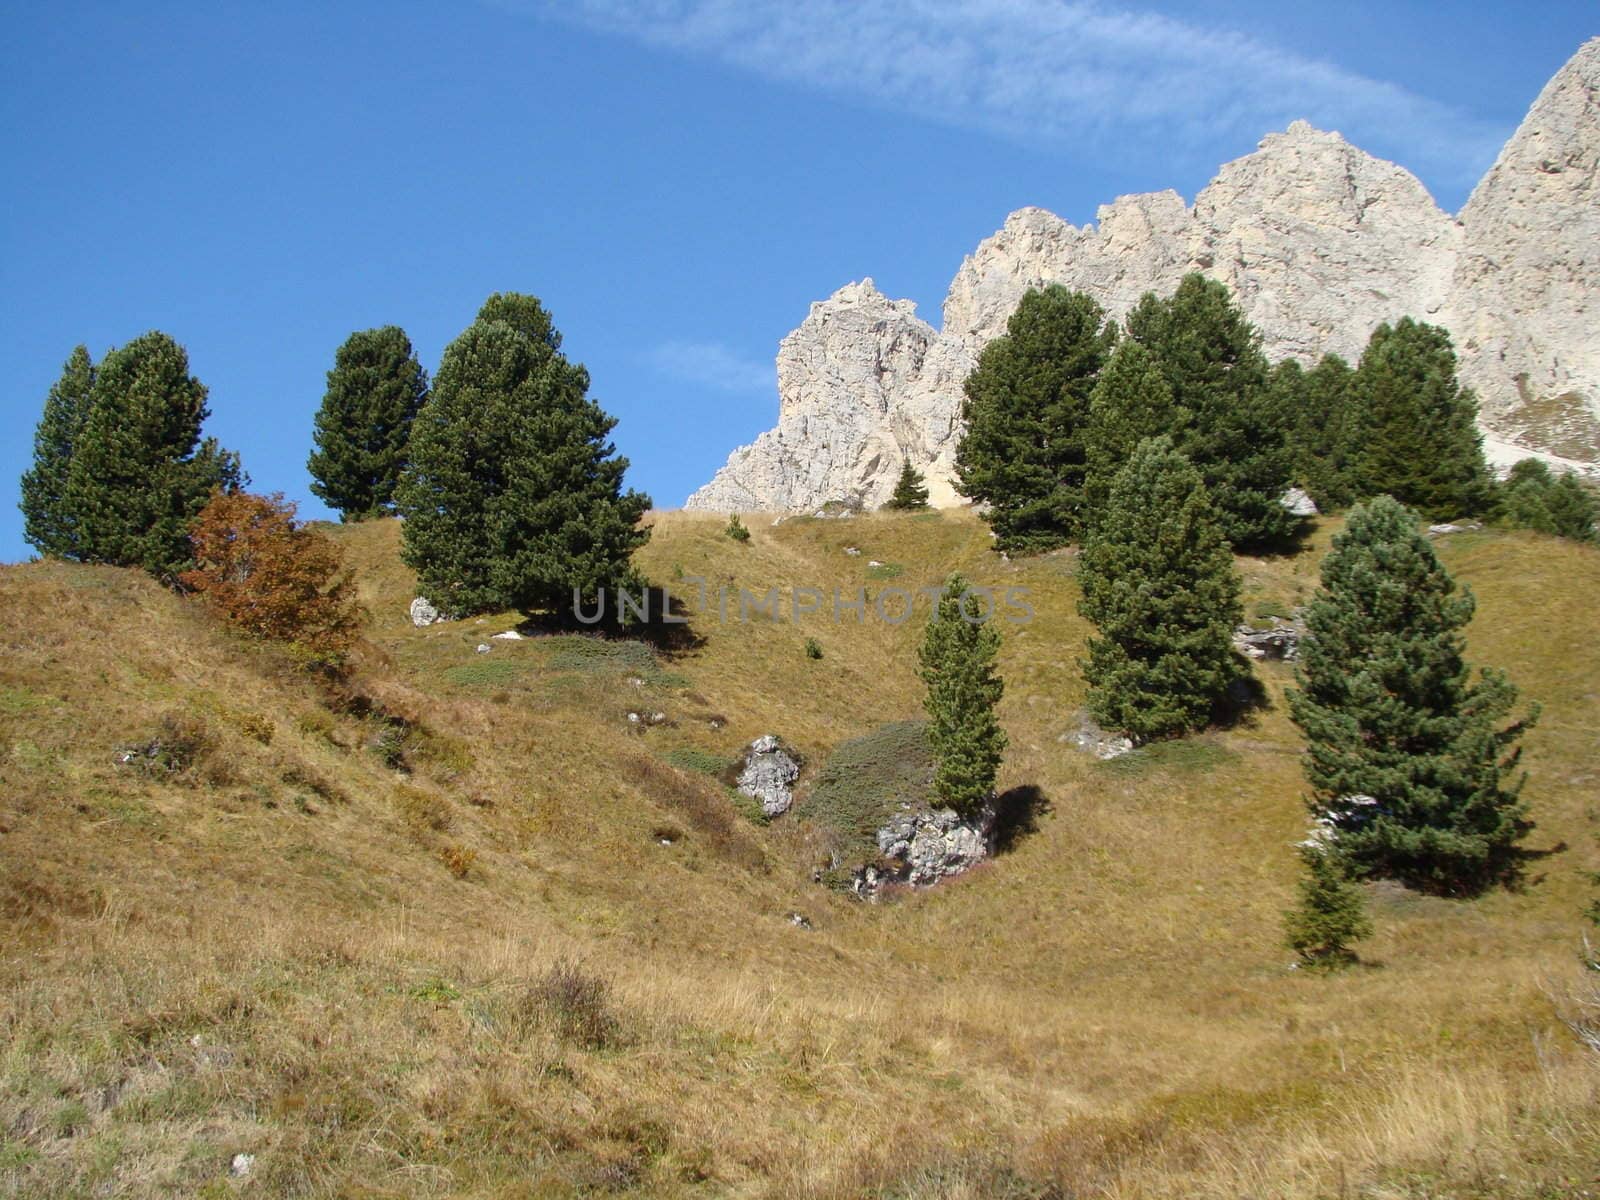 scenery in Dolomites in Italy.